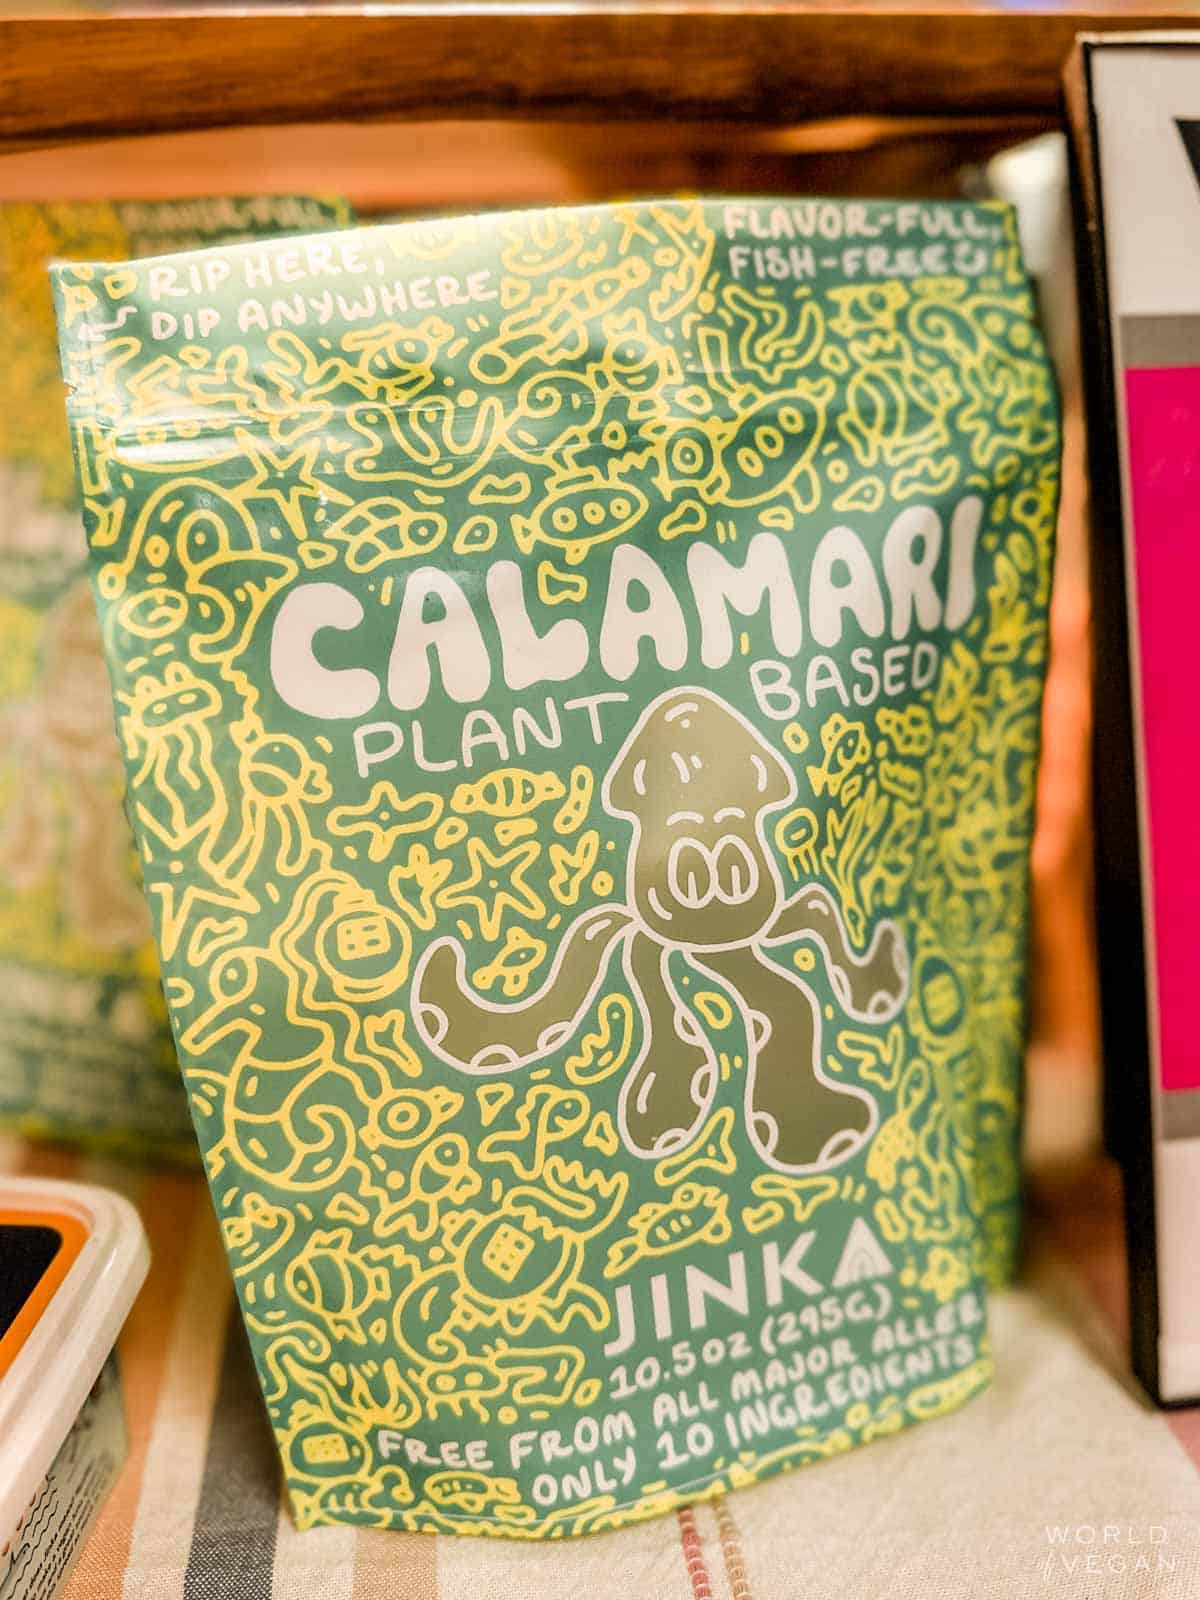 A package of Jinka brand plant-based calamari.